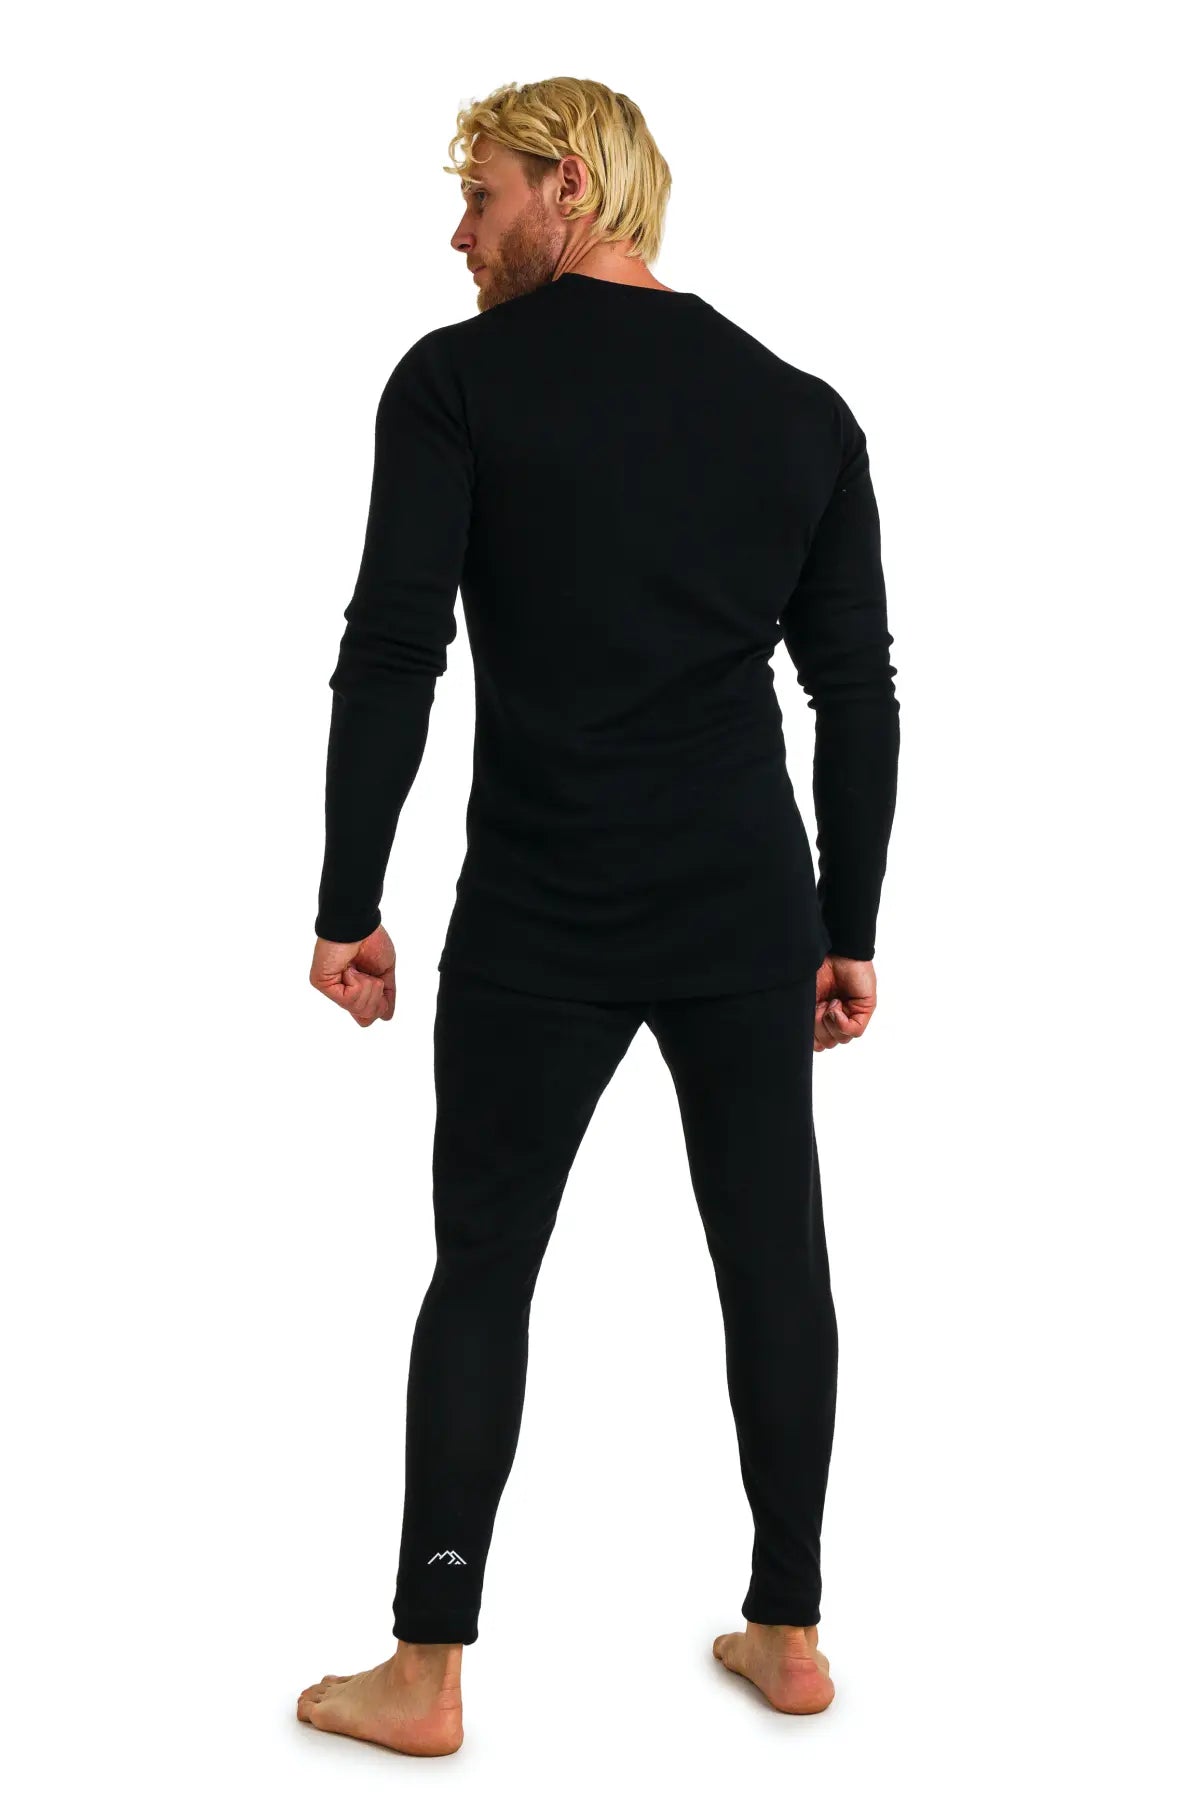 Men's Merino Wool Thermal Set Black